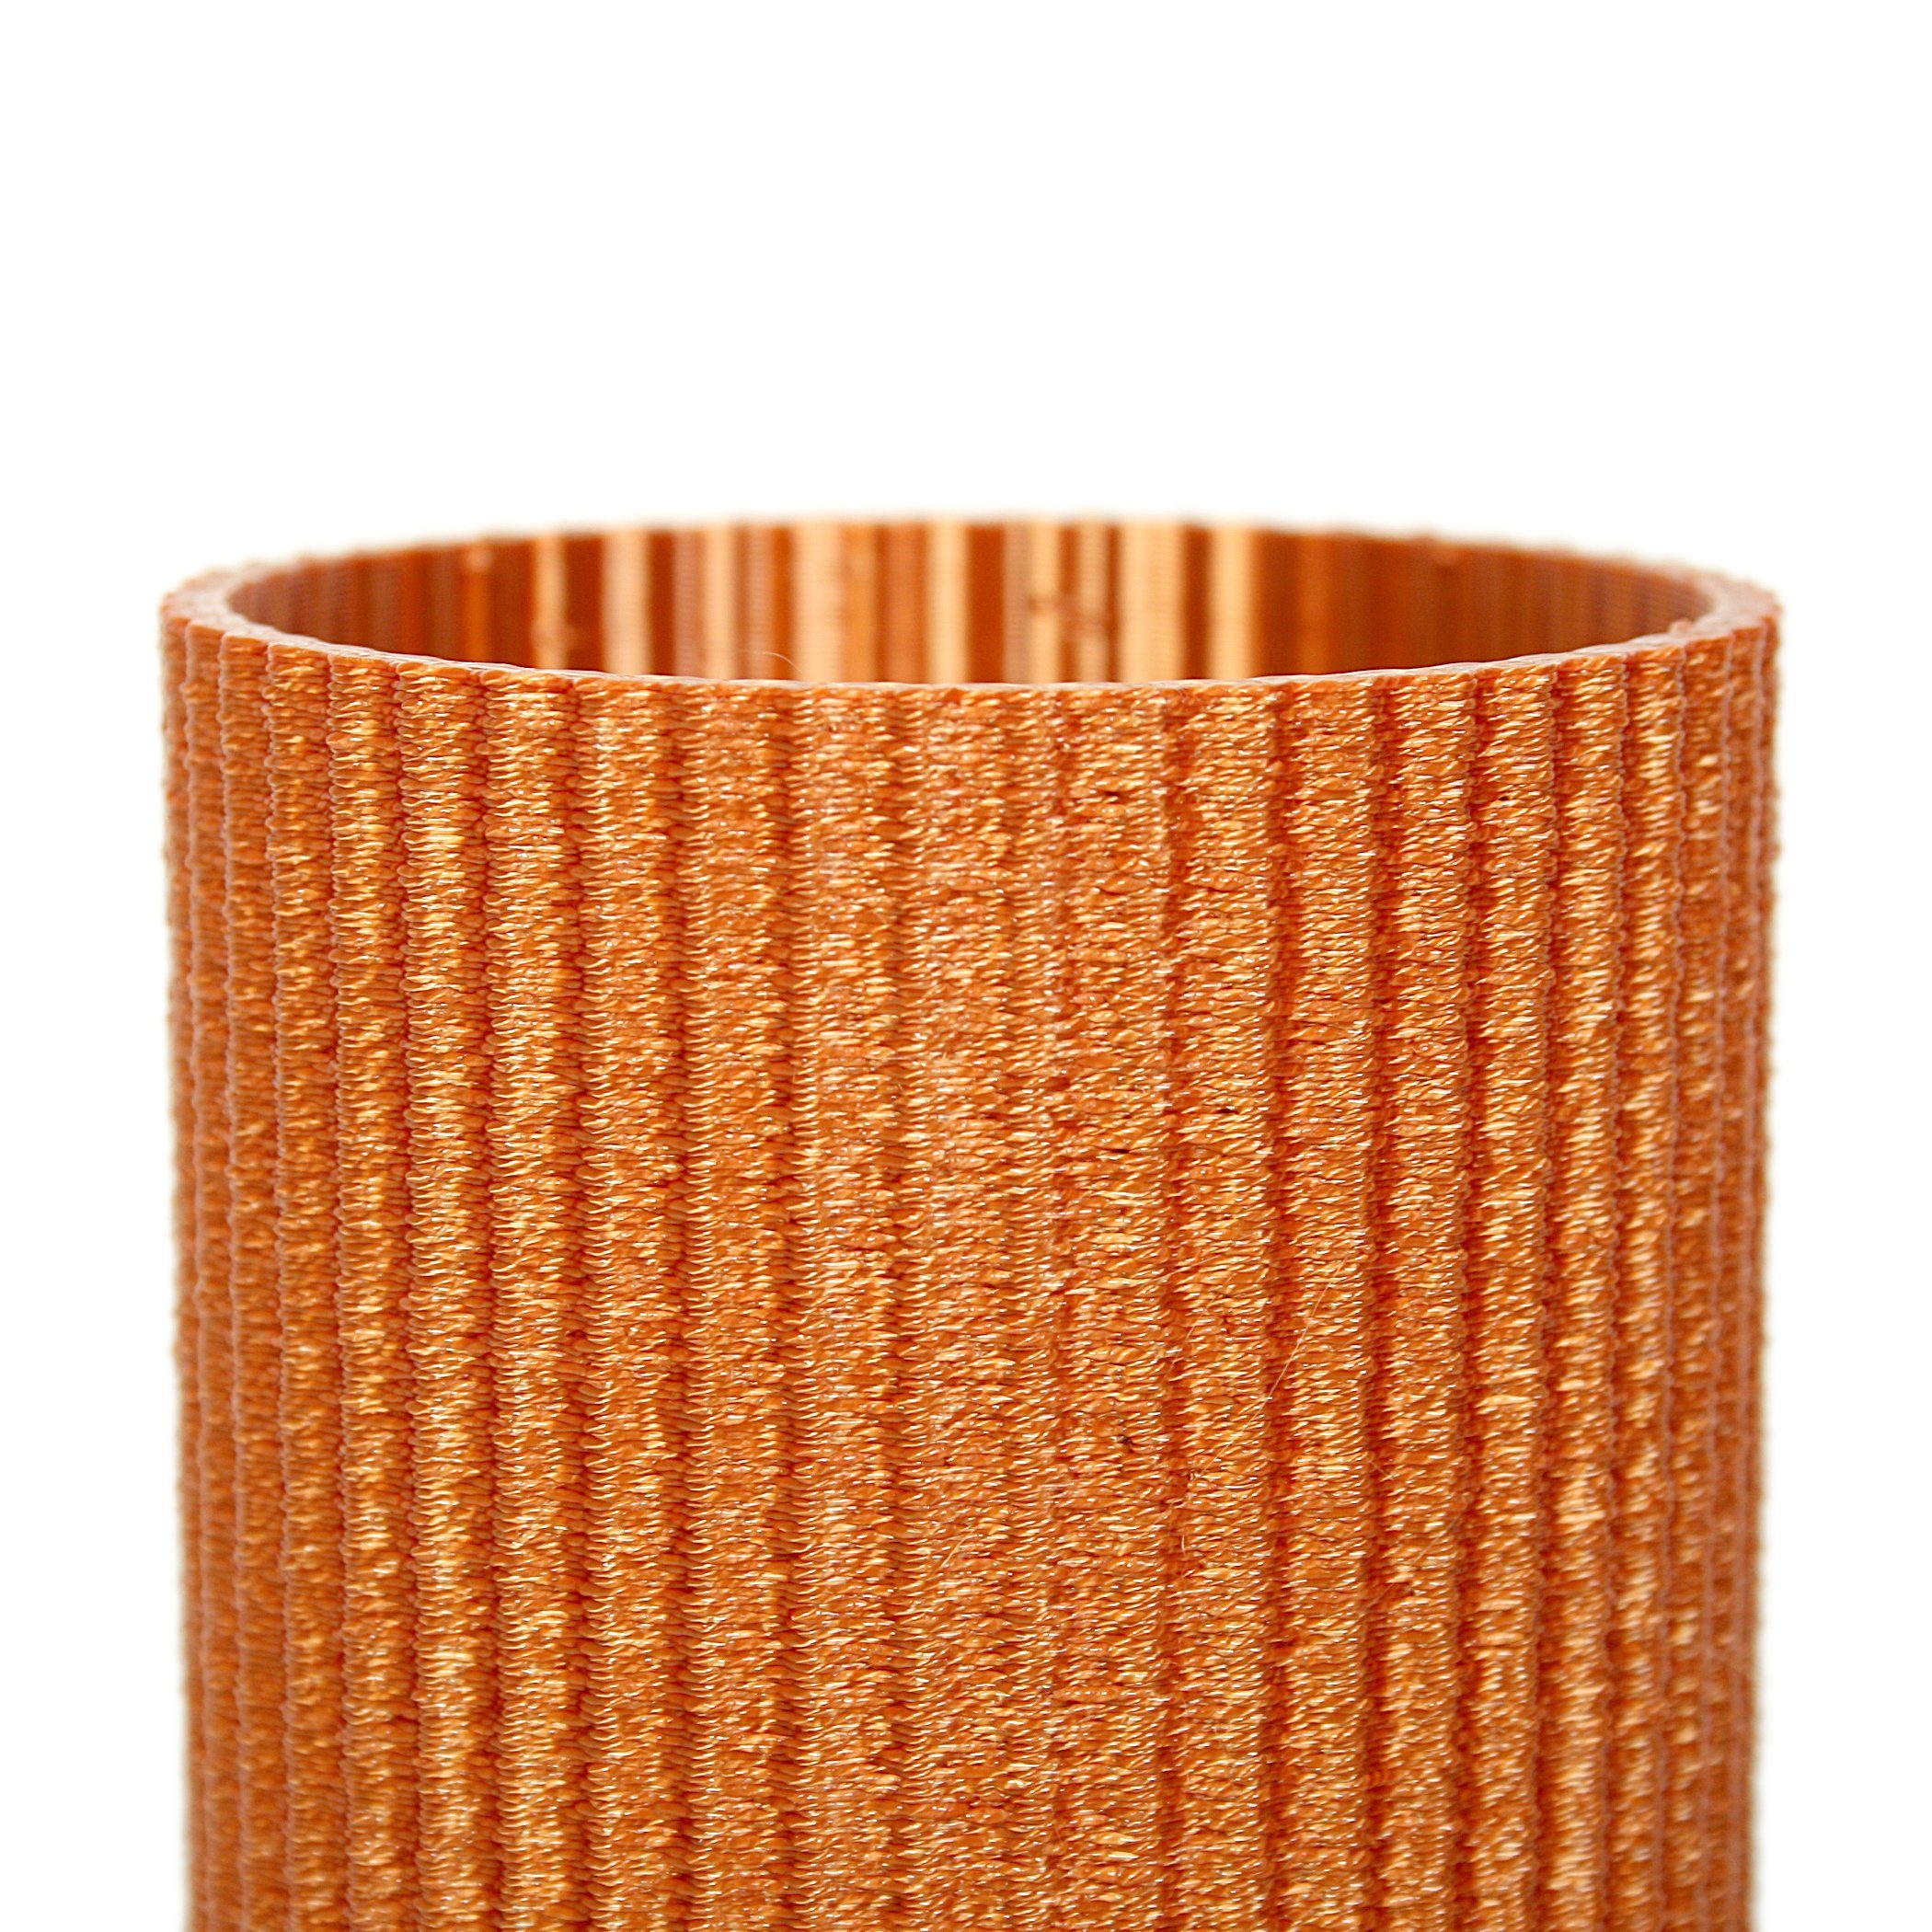 Rohstoffen; aus Dekorative Bronze aus Bio-Kunststoff, & nachwachsenden Feder bruchsicher wasserdicht – Blumenvase Dekovase Kreative Vase Designer